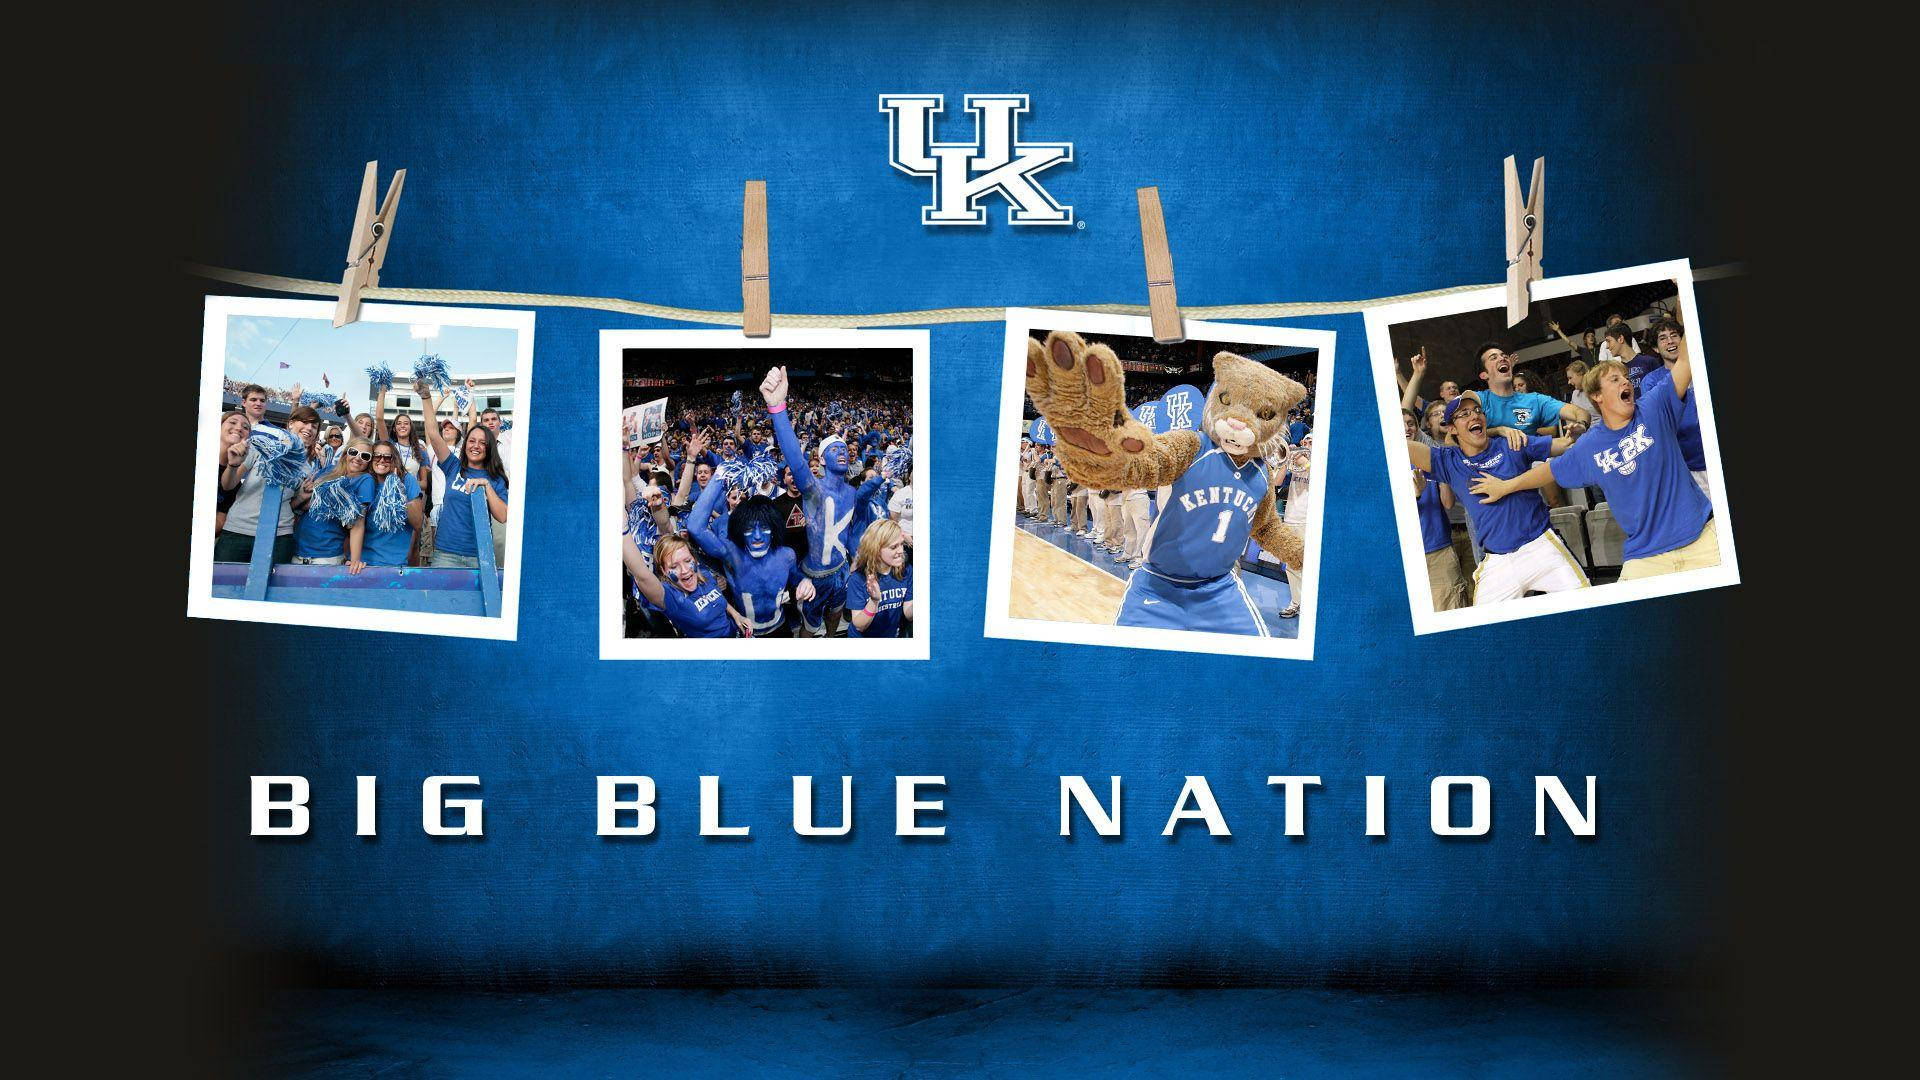 Kentuckybig Blue Nation: Kentucky Stora Blå Nationen. Wallpaper